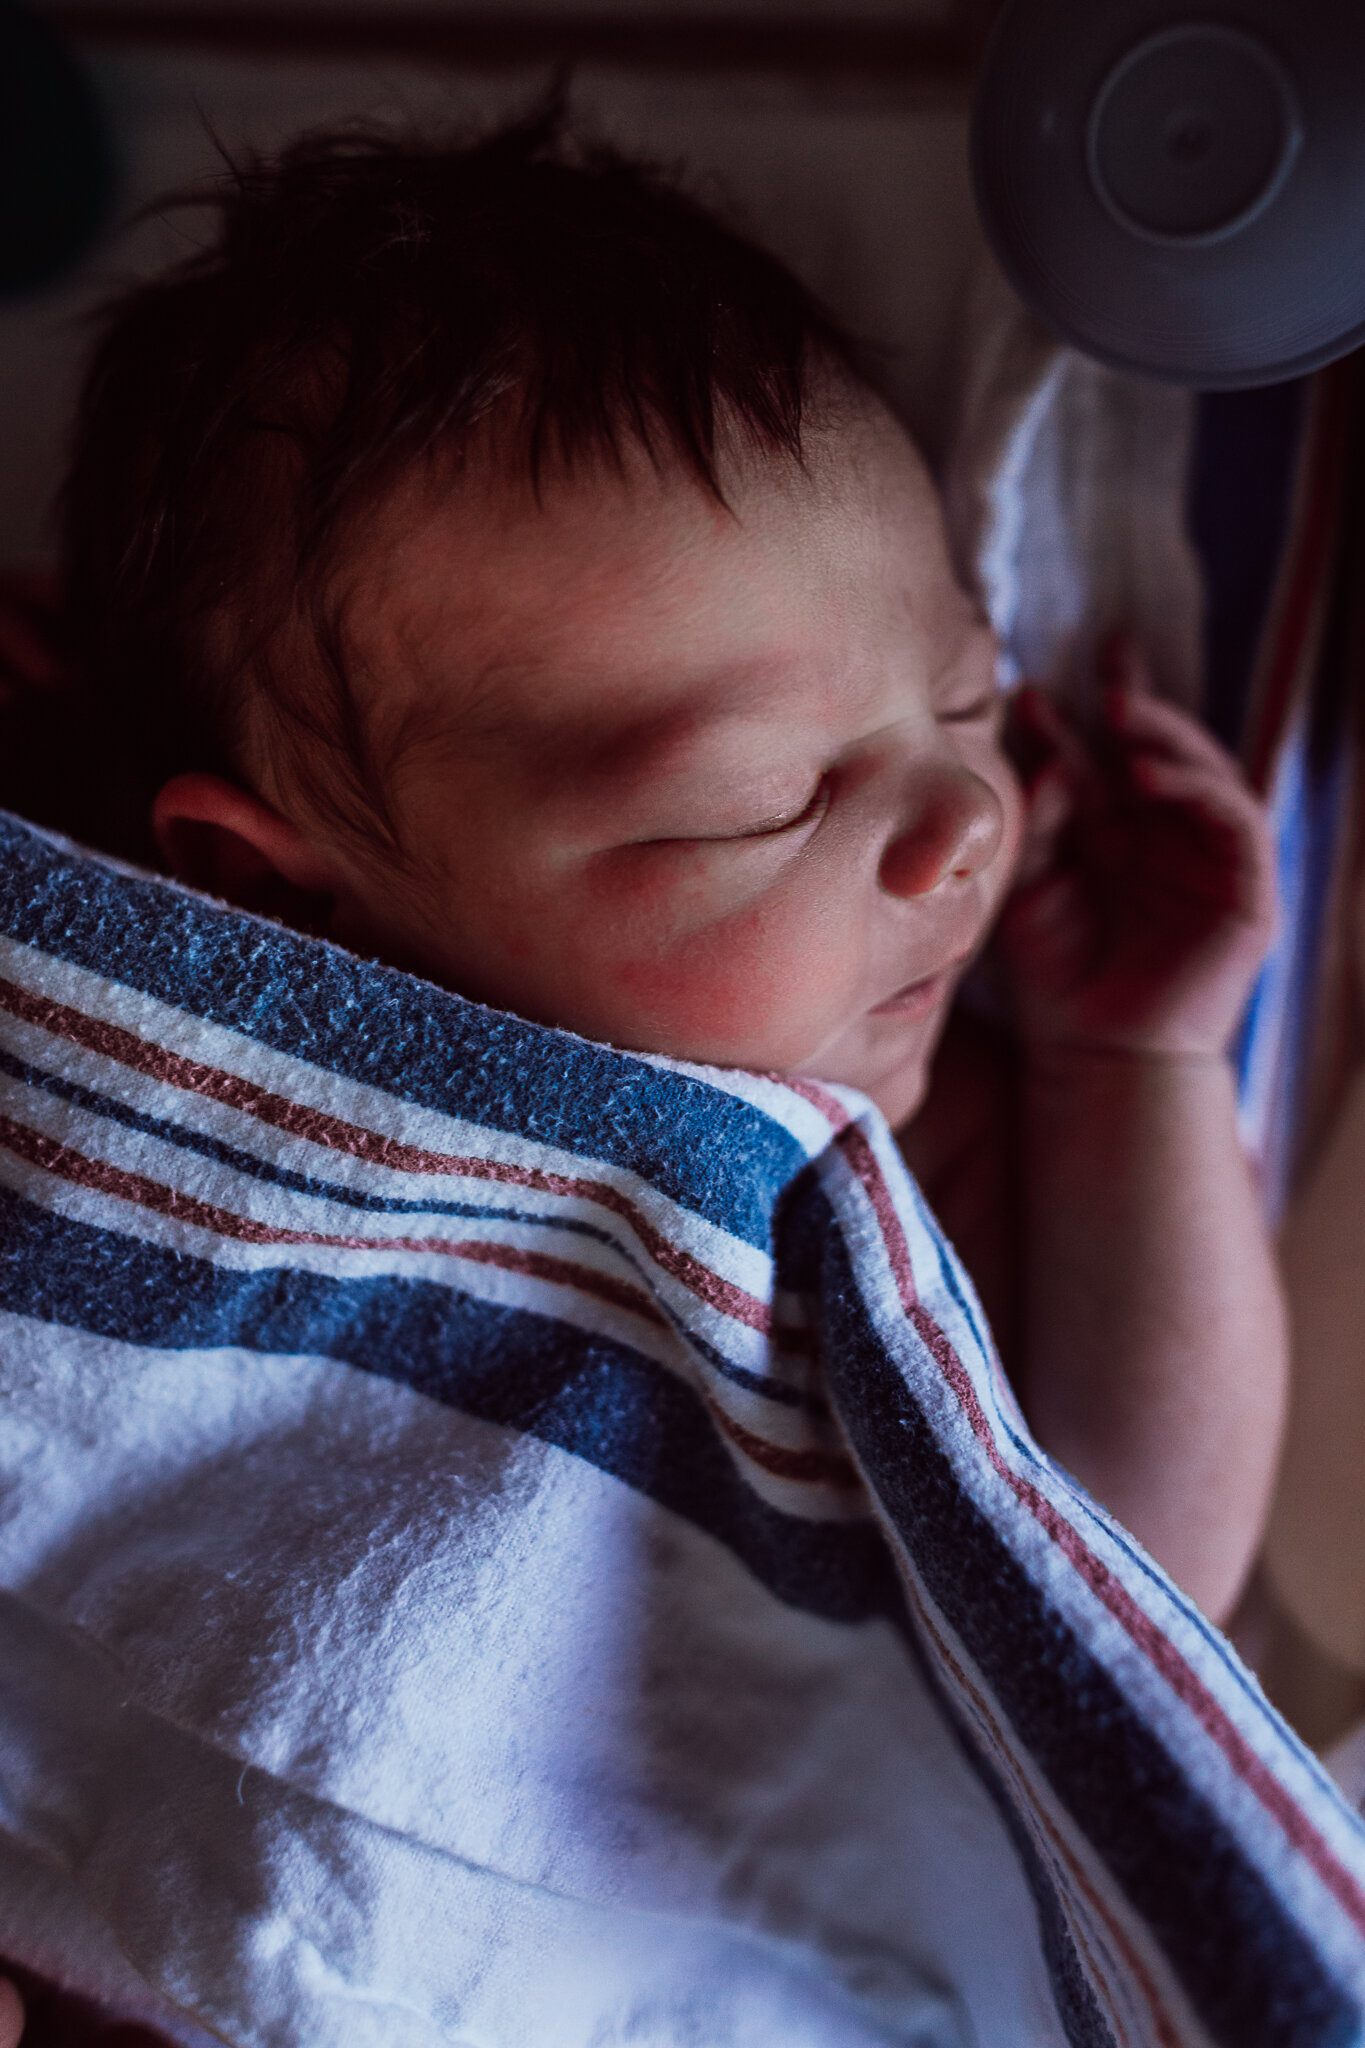 cesarean-birth-postpartum-maggie-williams-4159.jpg